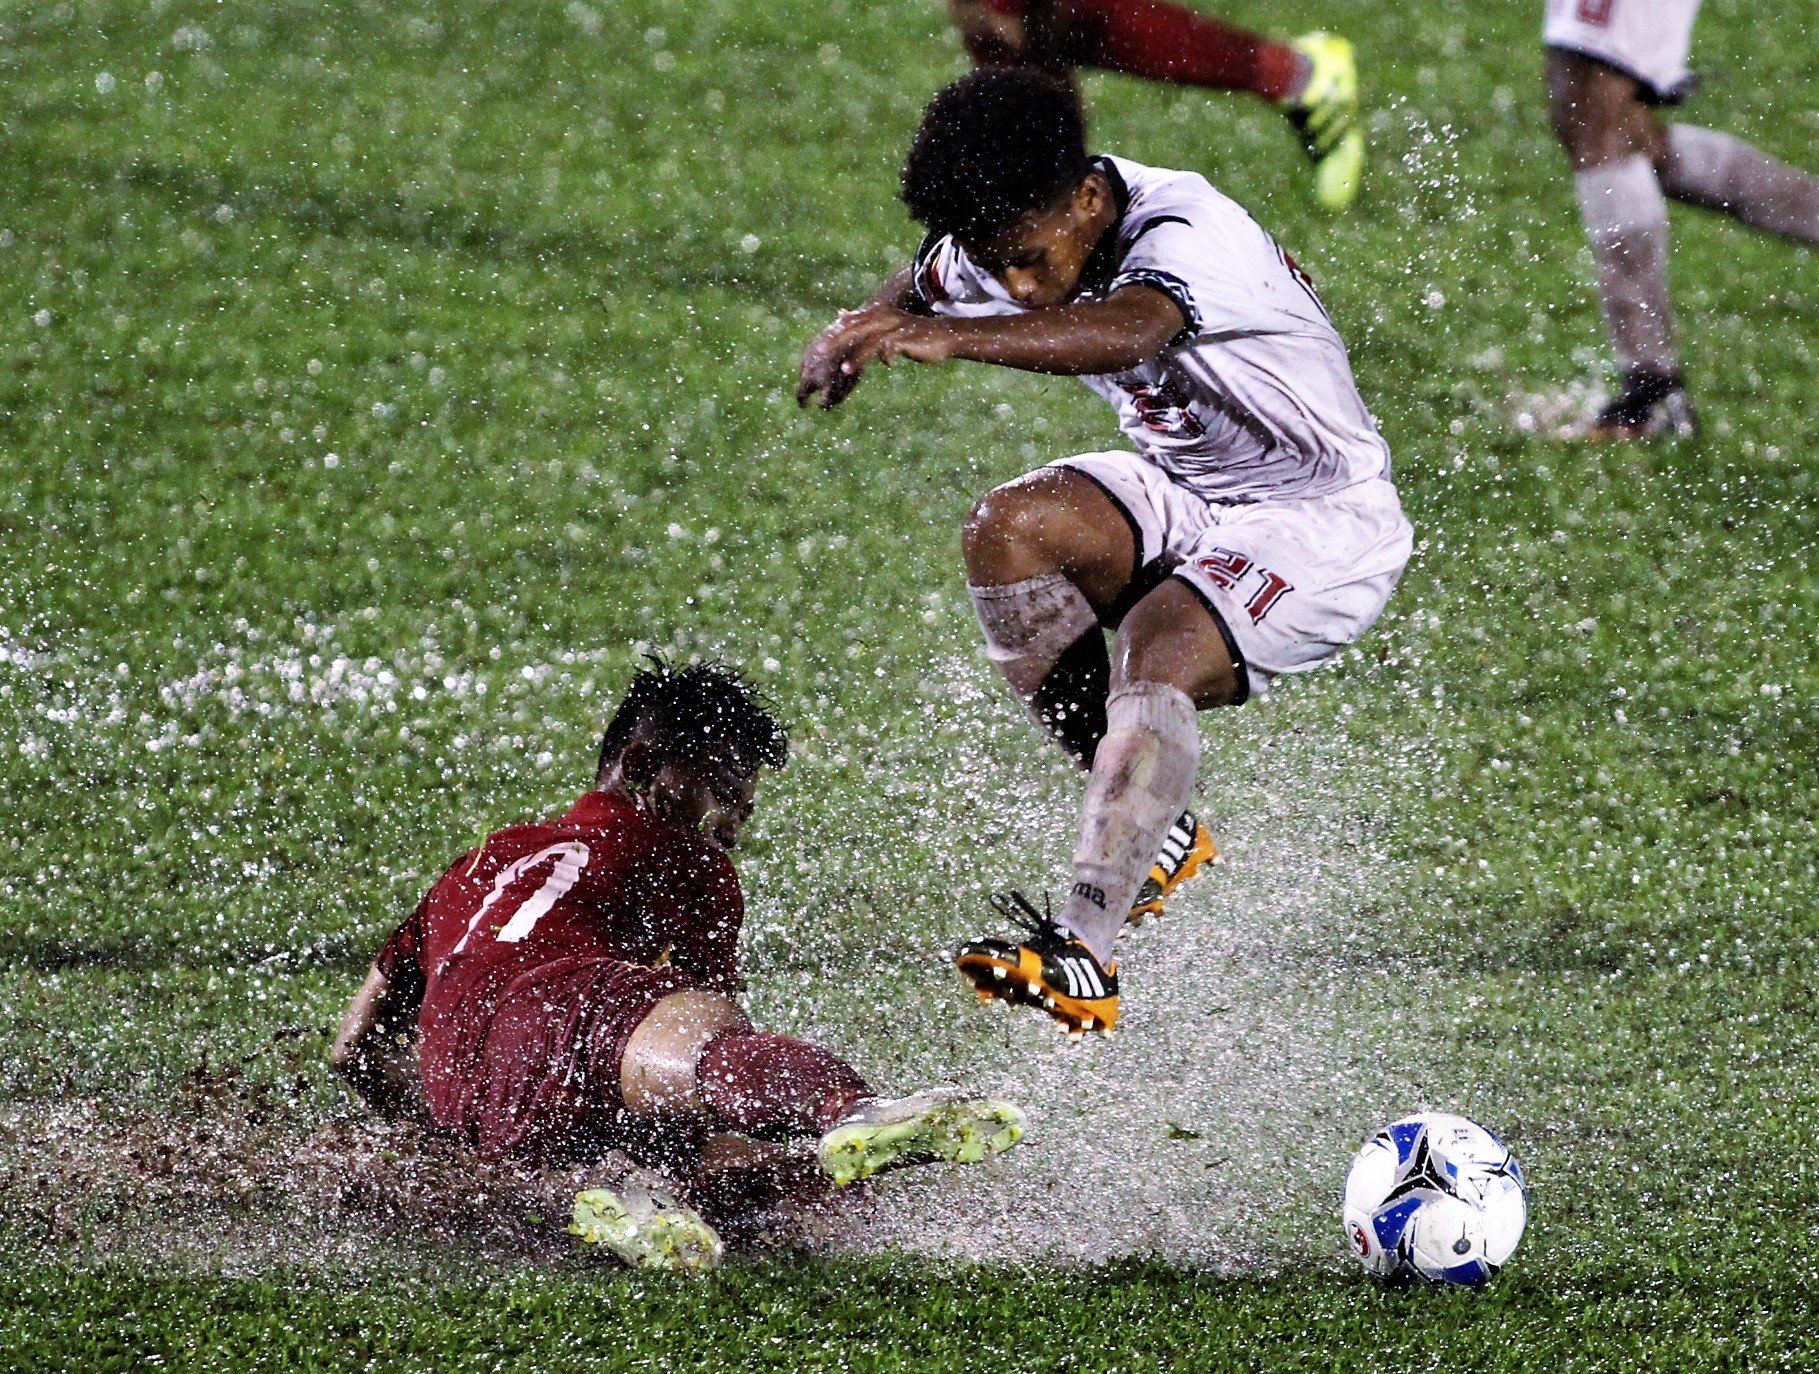 Tình trạng sân ngập nước khiến chuyên môn trận đấu bị giảm sút, cầu thủ cũng dễ dính chấn thương hơn